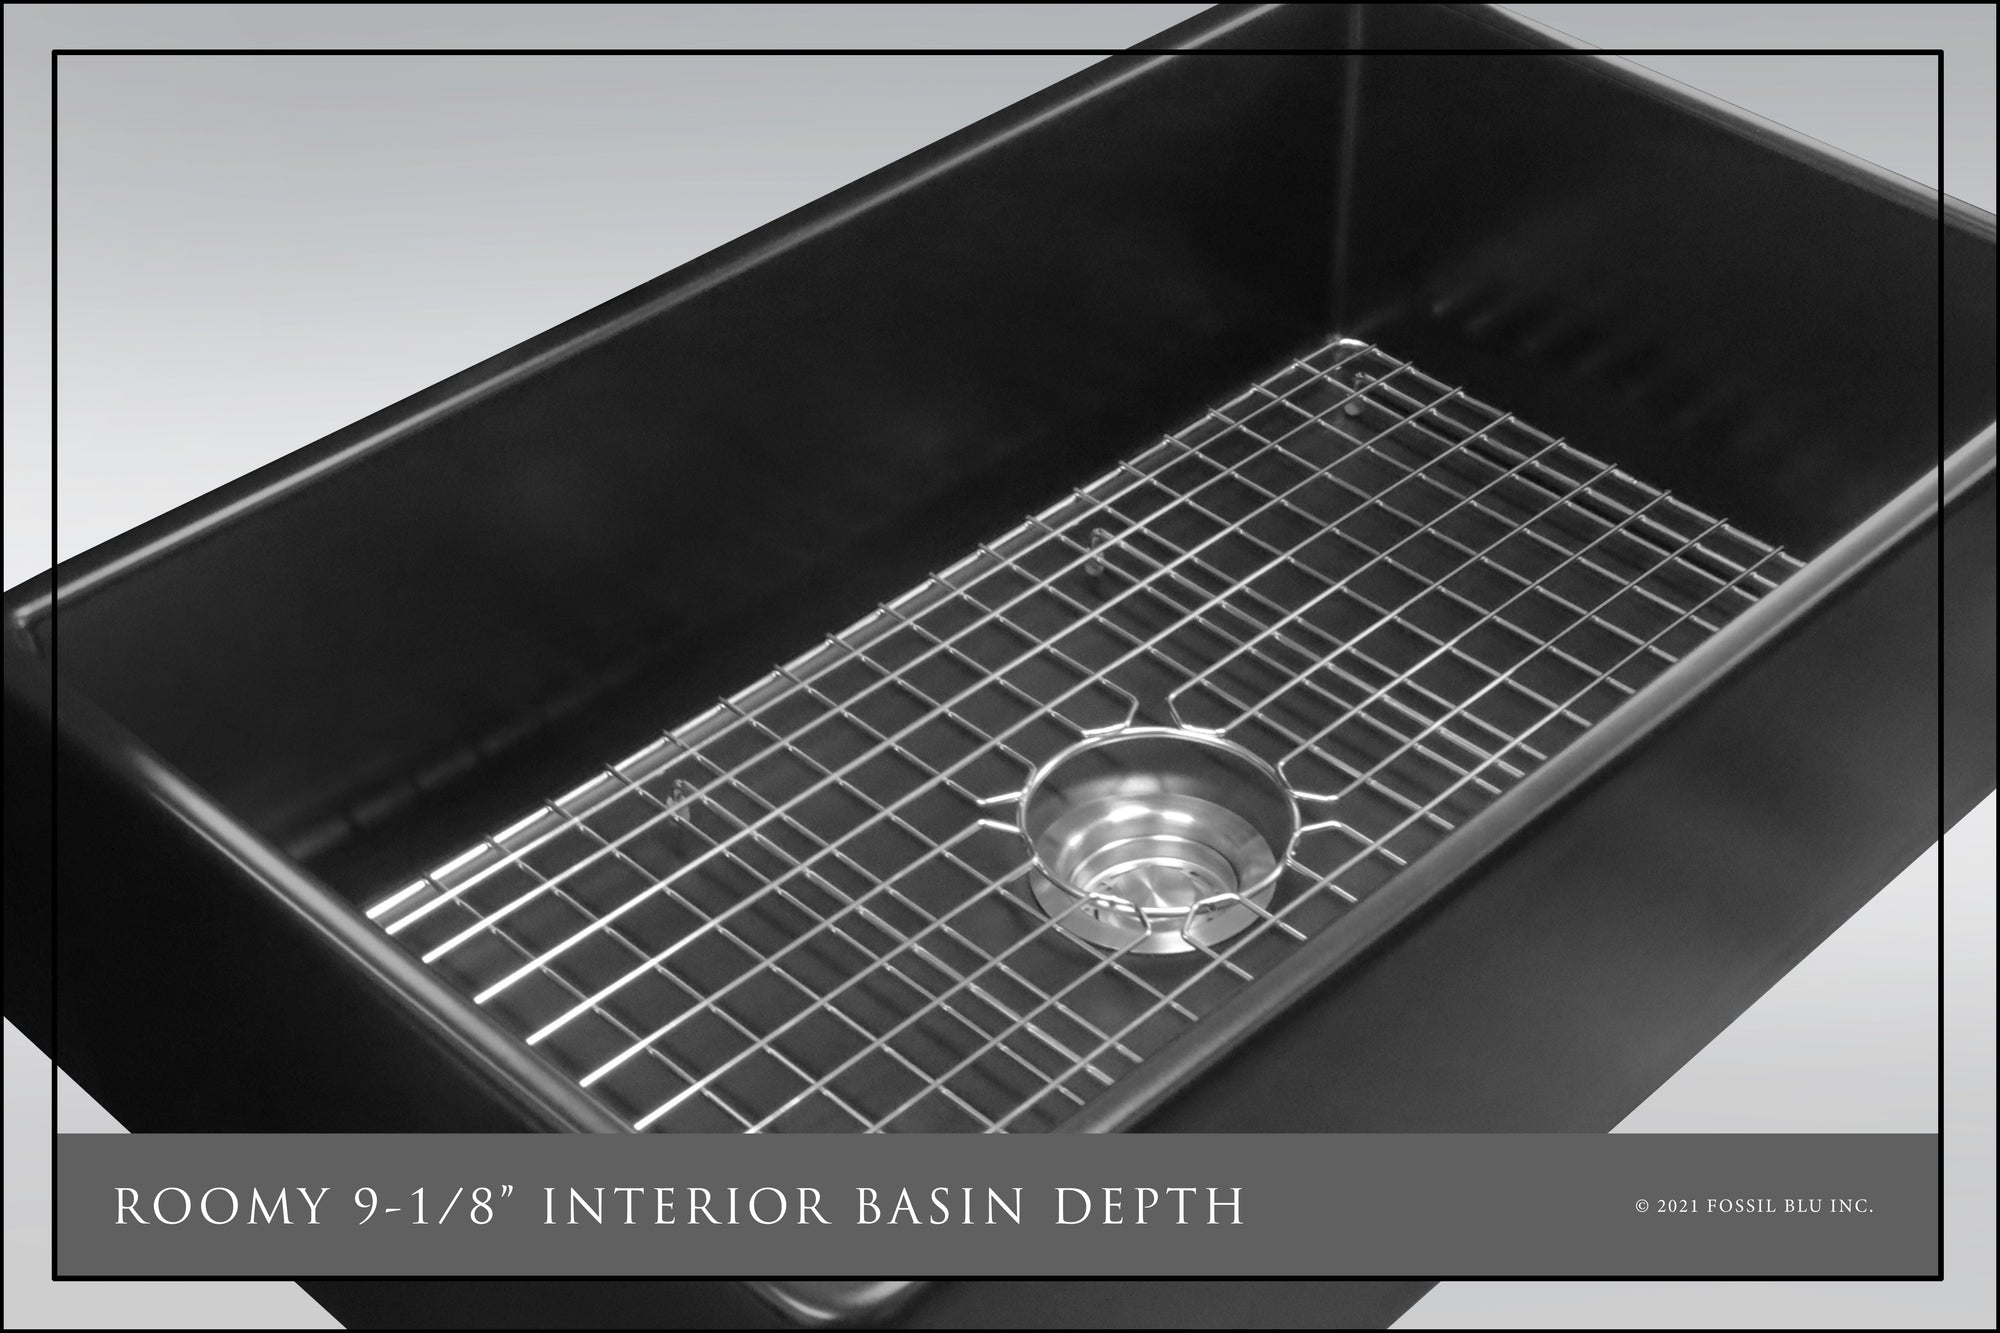 FSW1022 Luxury 33-inch Solid Fireclay Farmhouse Sink, Matte Black, St. Steel Accs, Flat Front